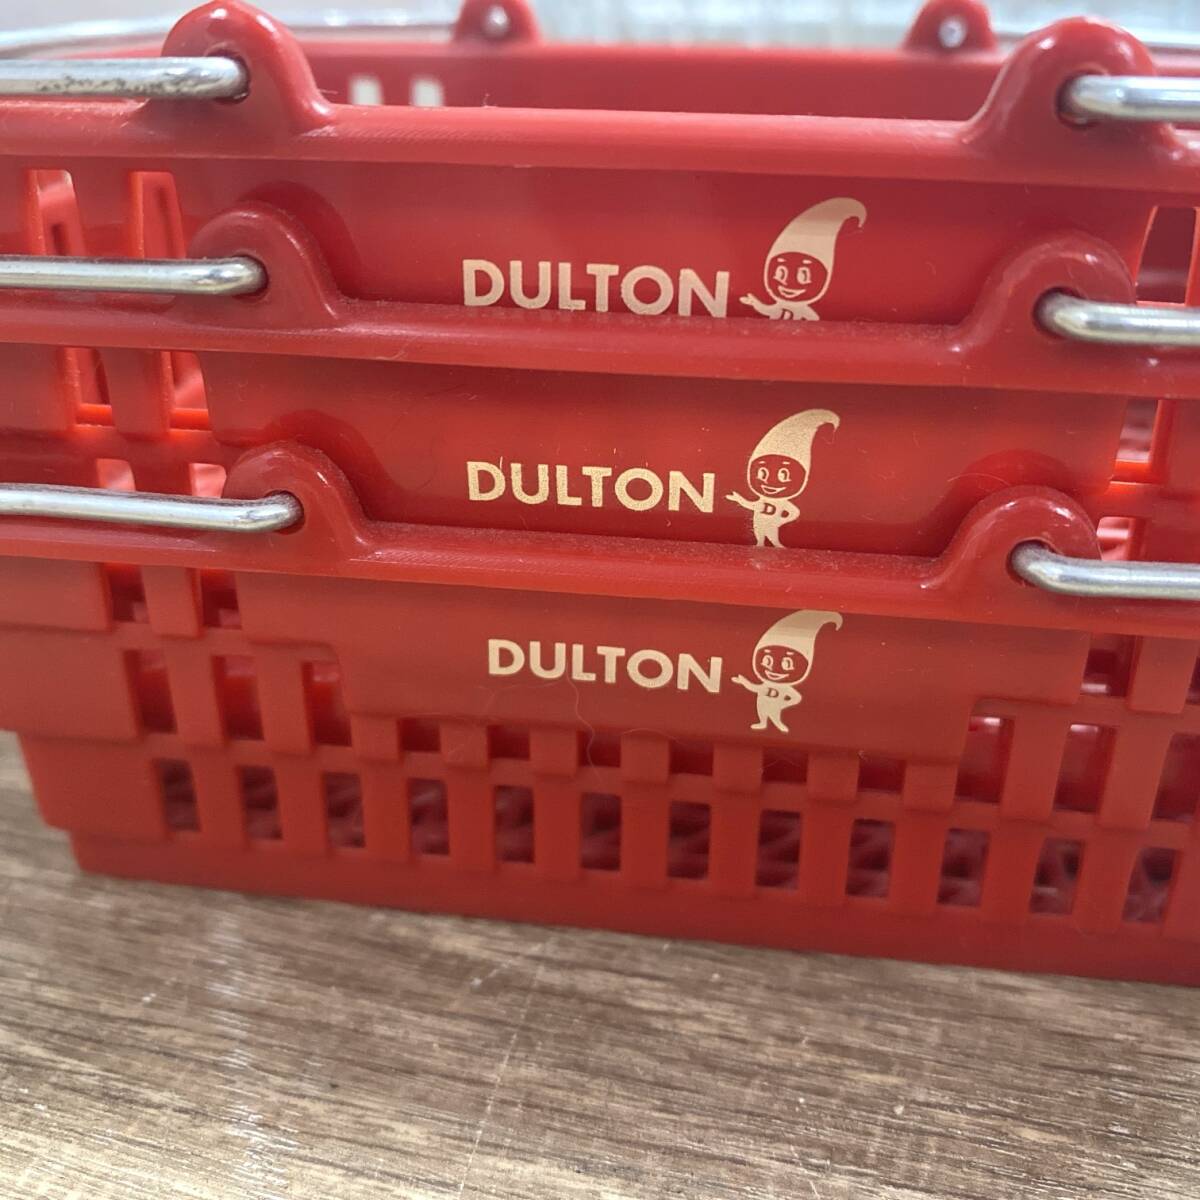 ダルトン/DULTON COMPANY LIMITED マーケットバスケット Sサイズ 赤(ピンク)/青/黄 3色 大3点+小3点 計6点 インテリア 雑貨 24c菊TK_画像7